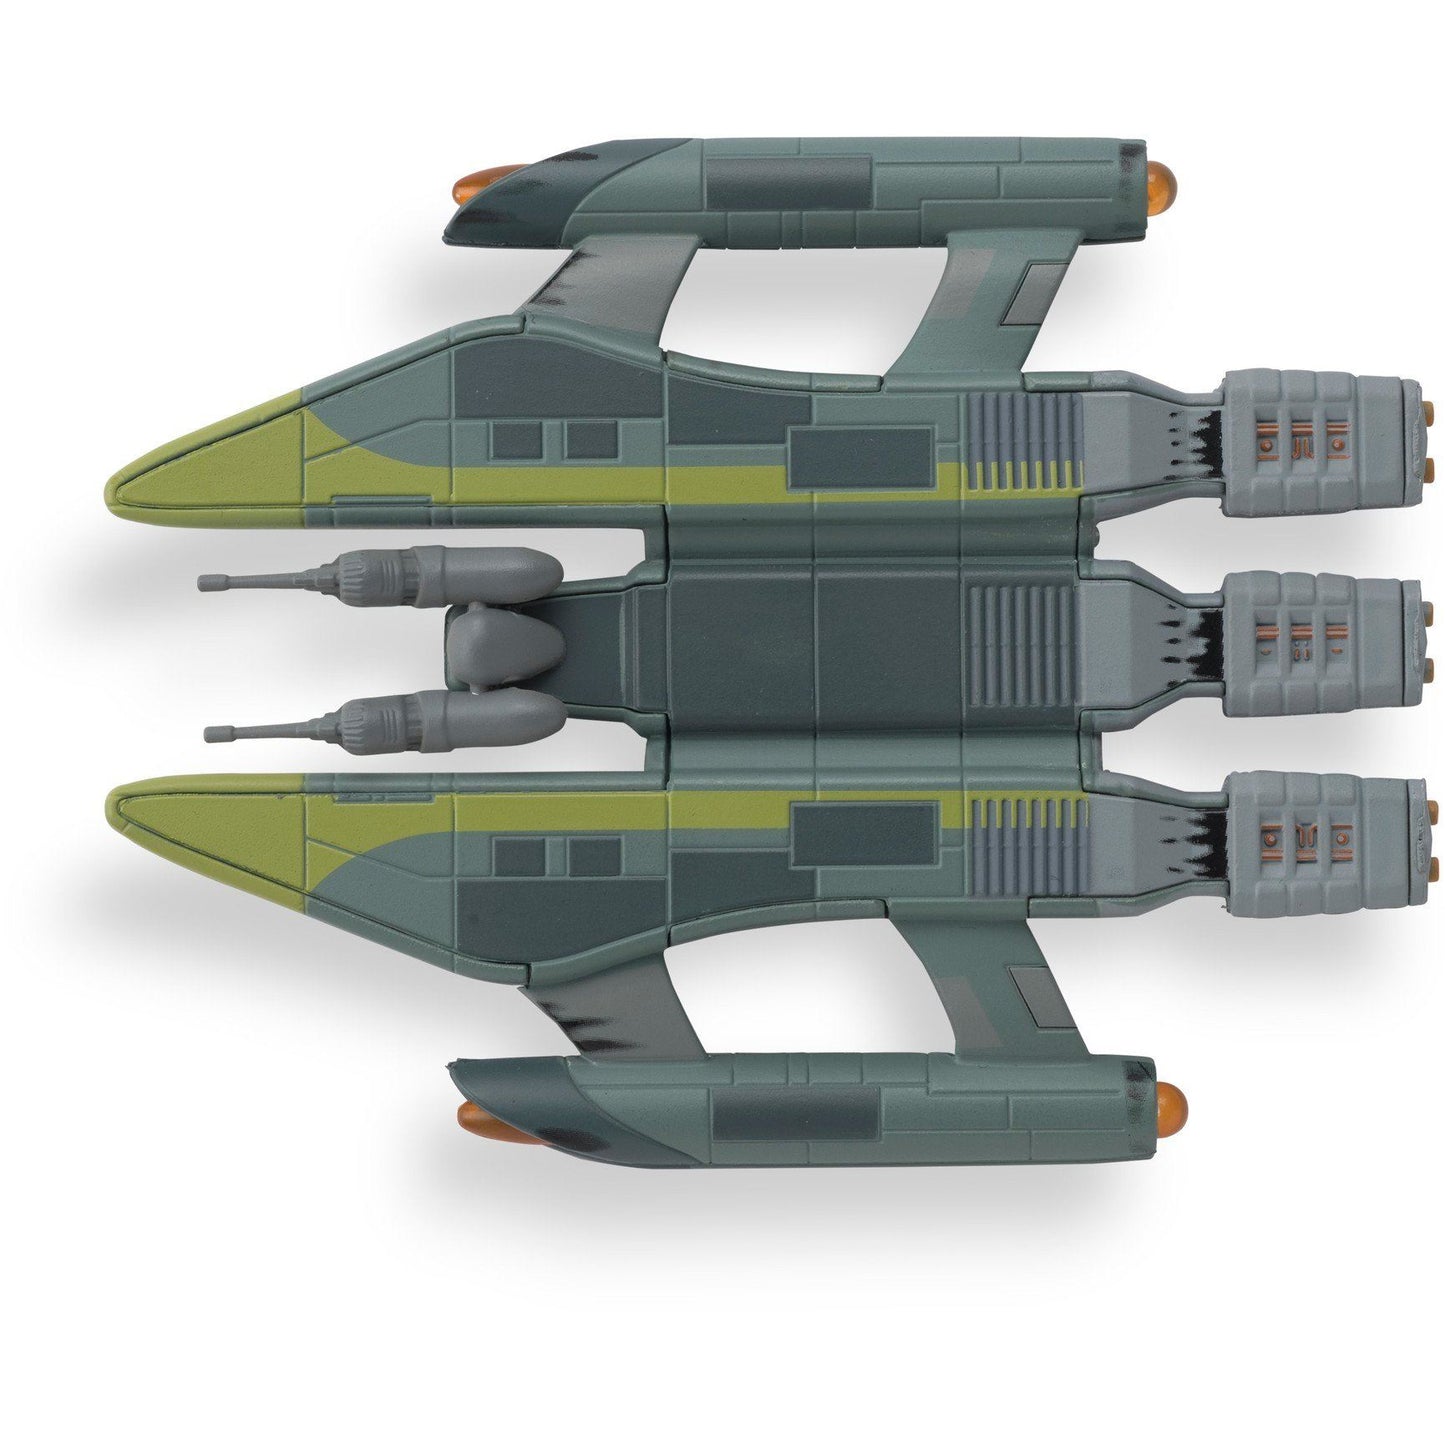 #139 Vaadwaur Assault Fighter Model Die Cast Ship (Eaglemoss / Star Trek)